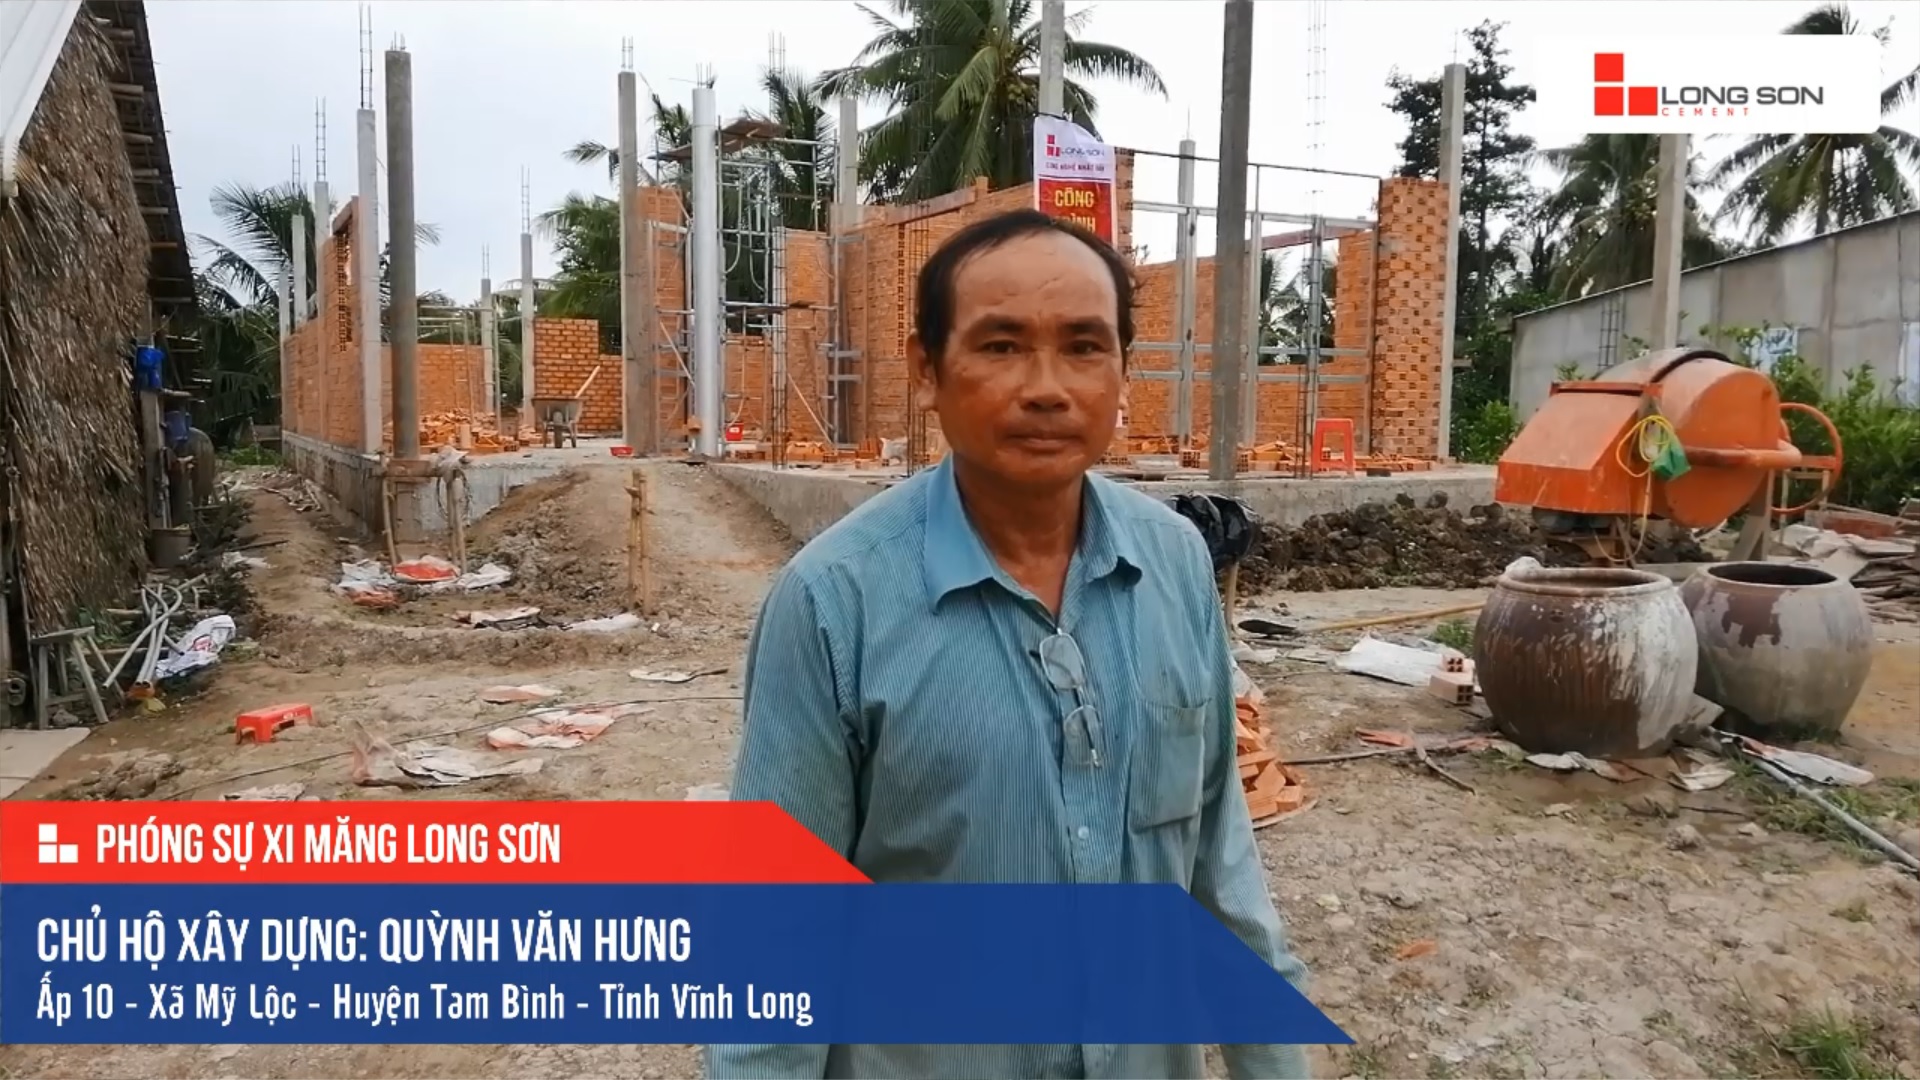 Phóng sự công trình sử dụng Xi măng Long Sơn tại Vĩnh Long 16.07.2019